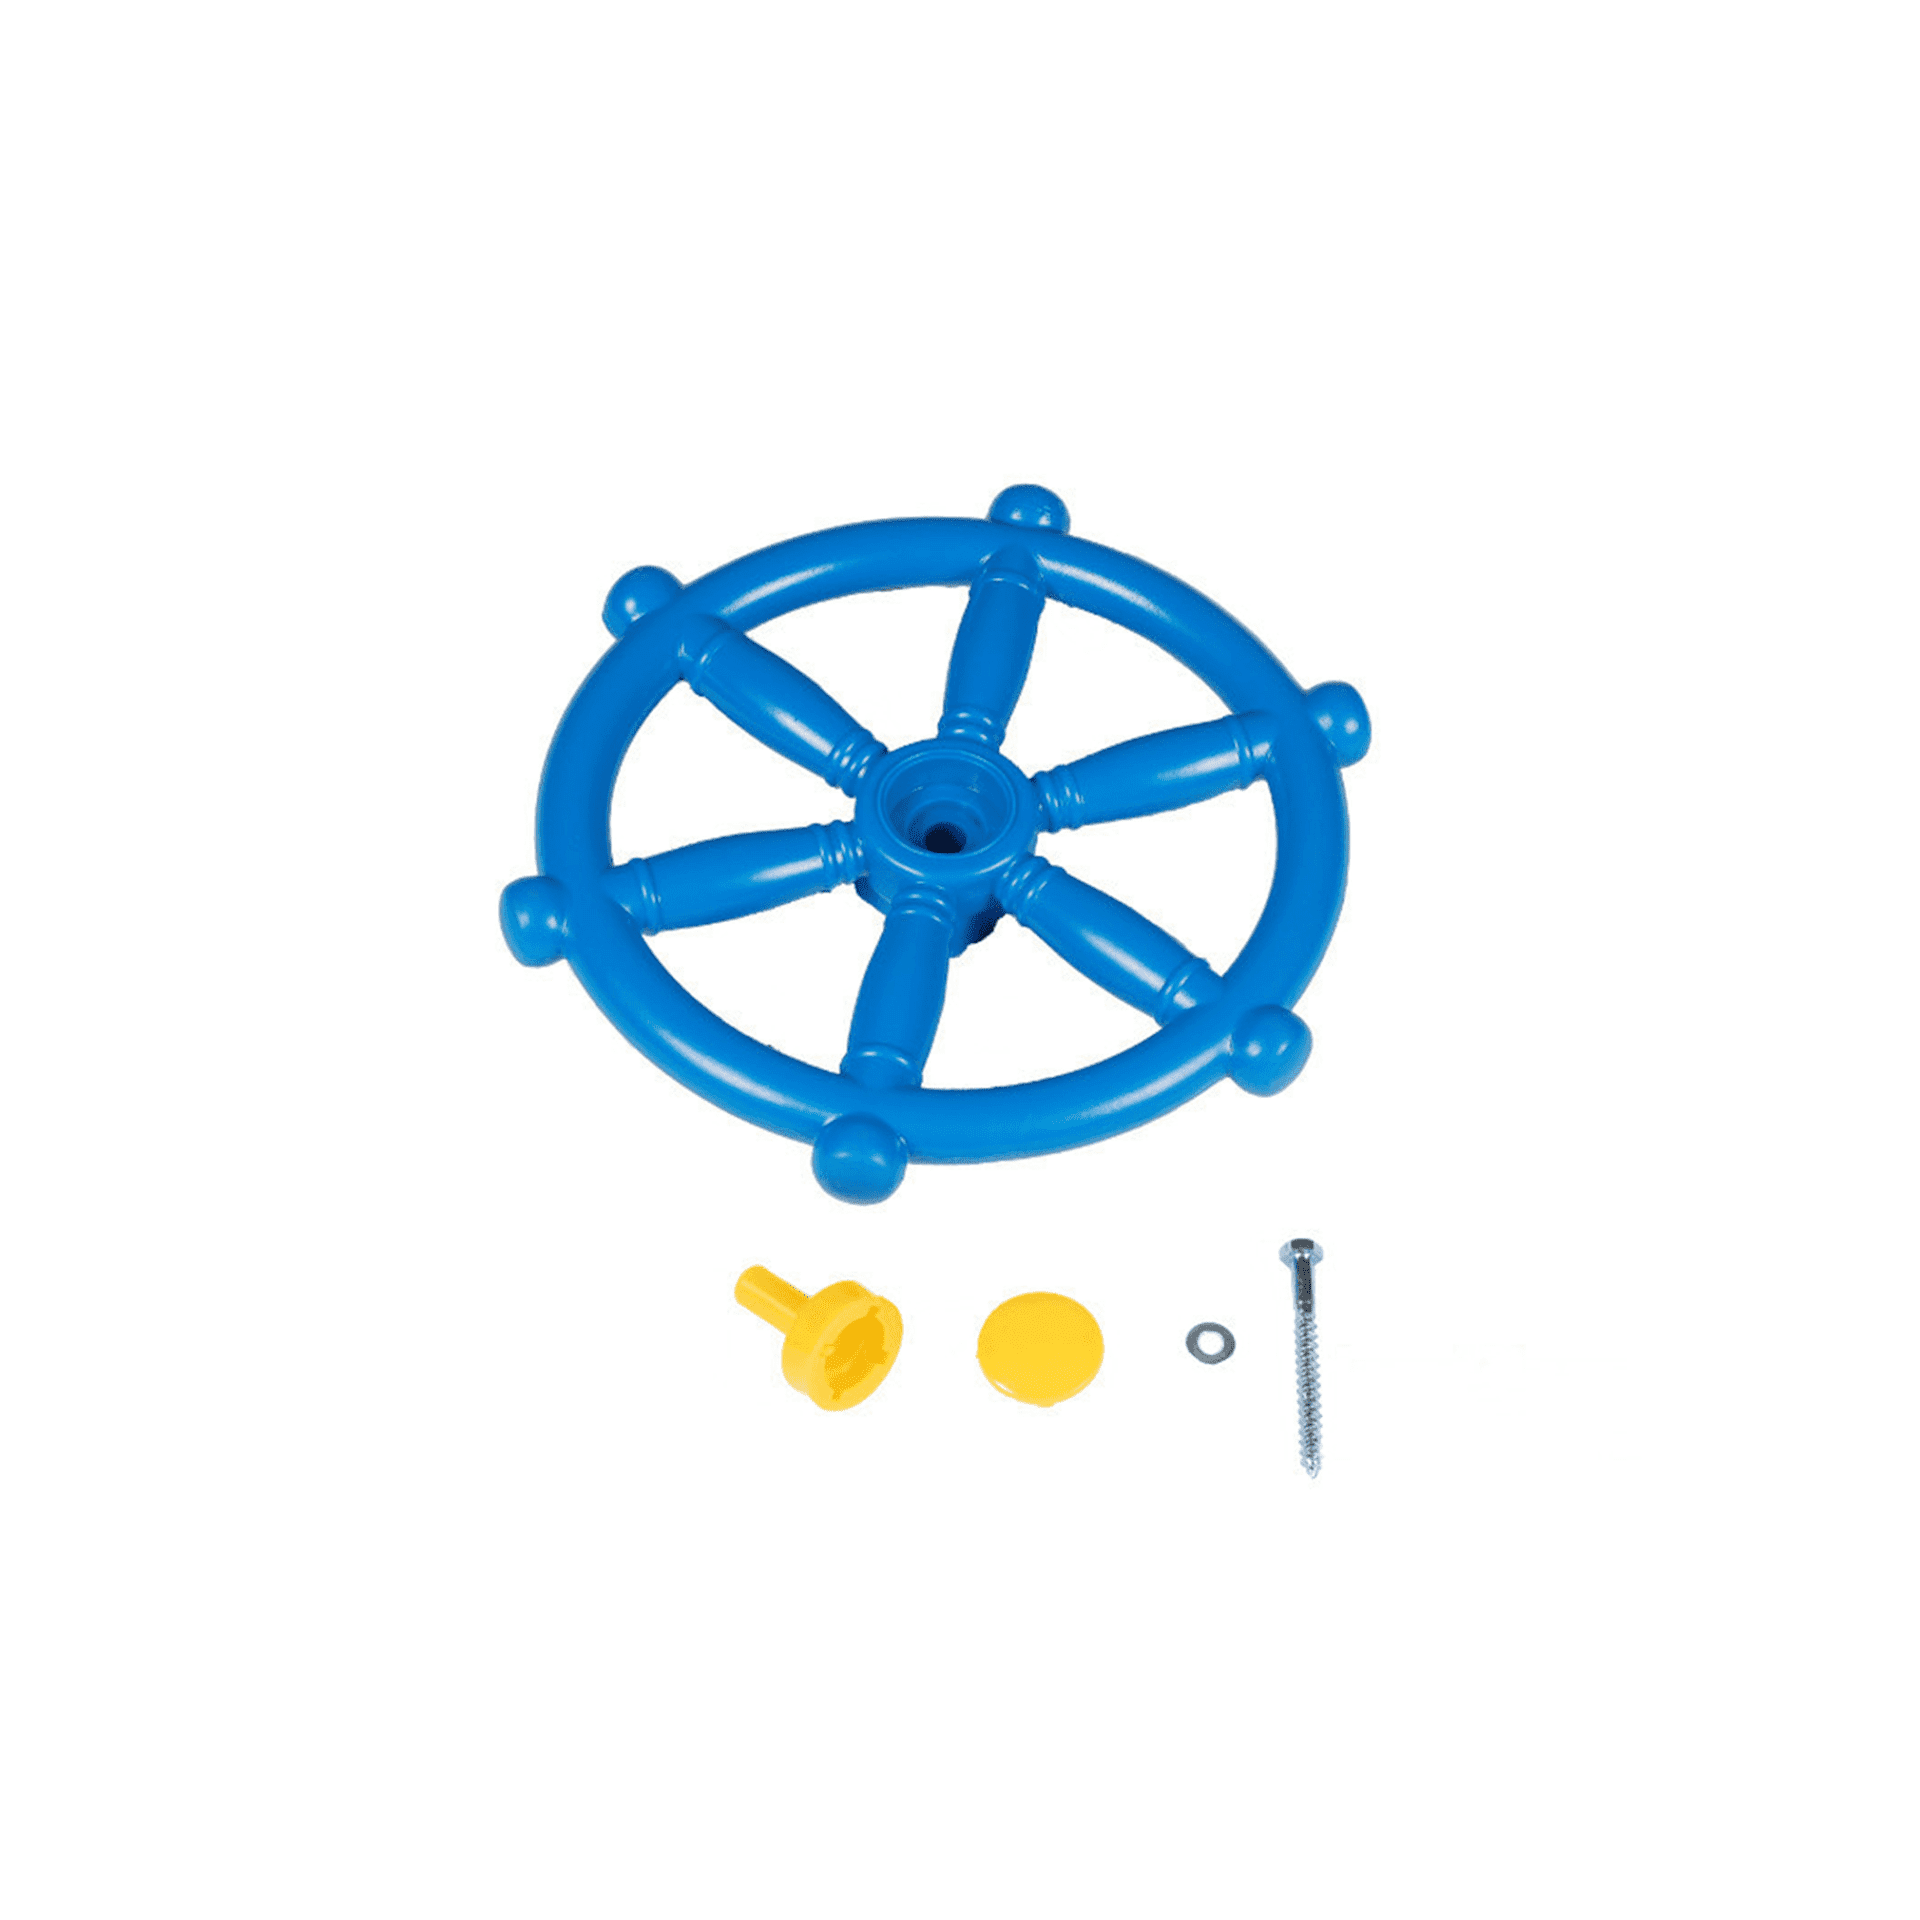 Rotaļlieta – stūre (zilā krāsā)